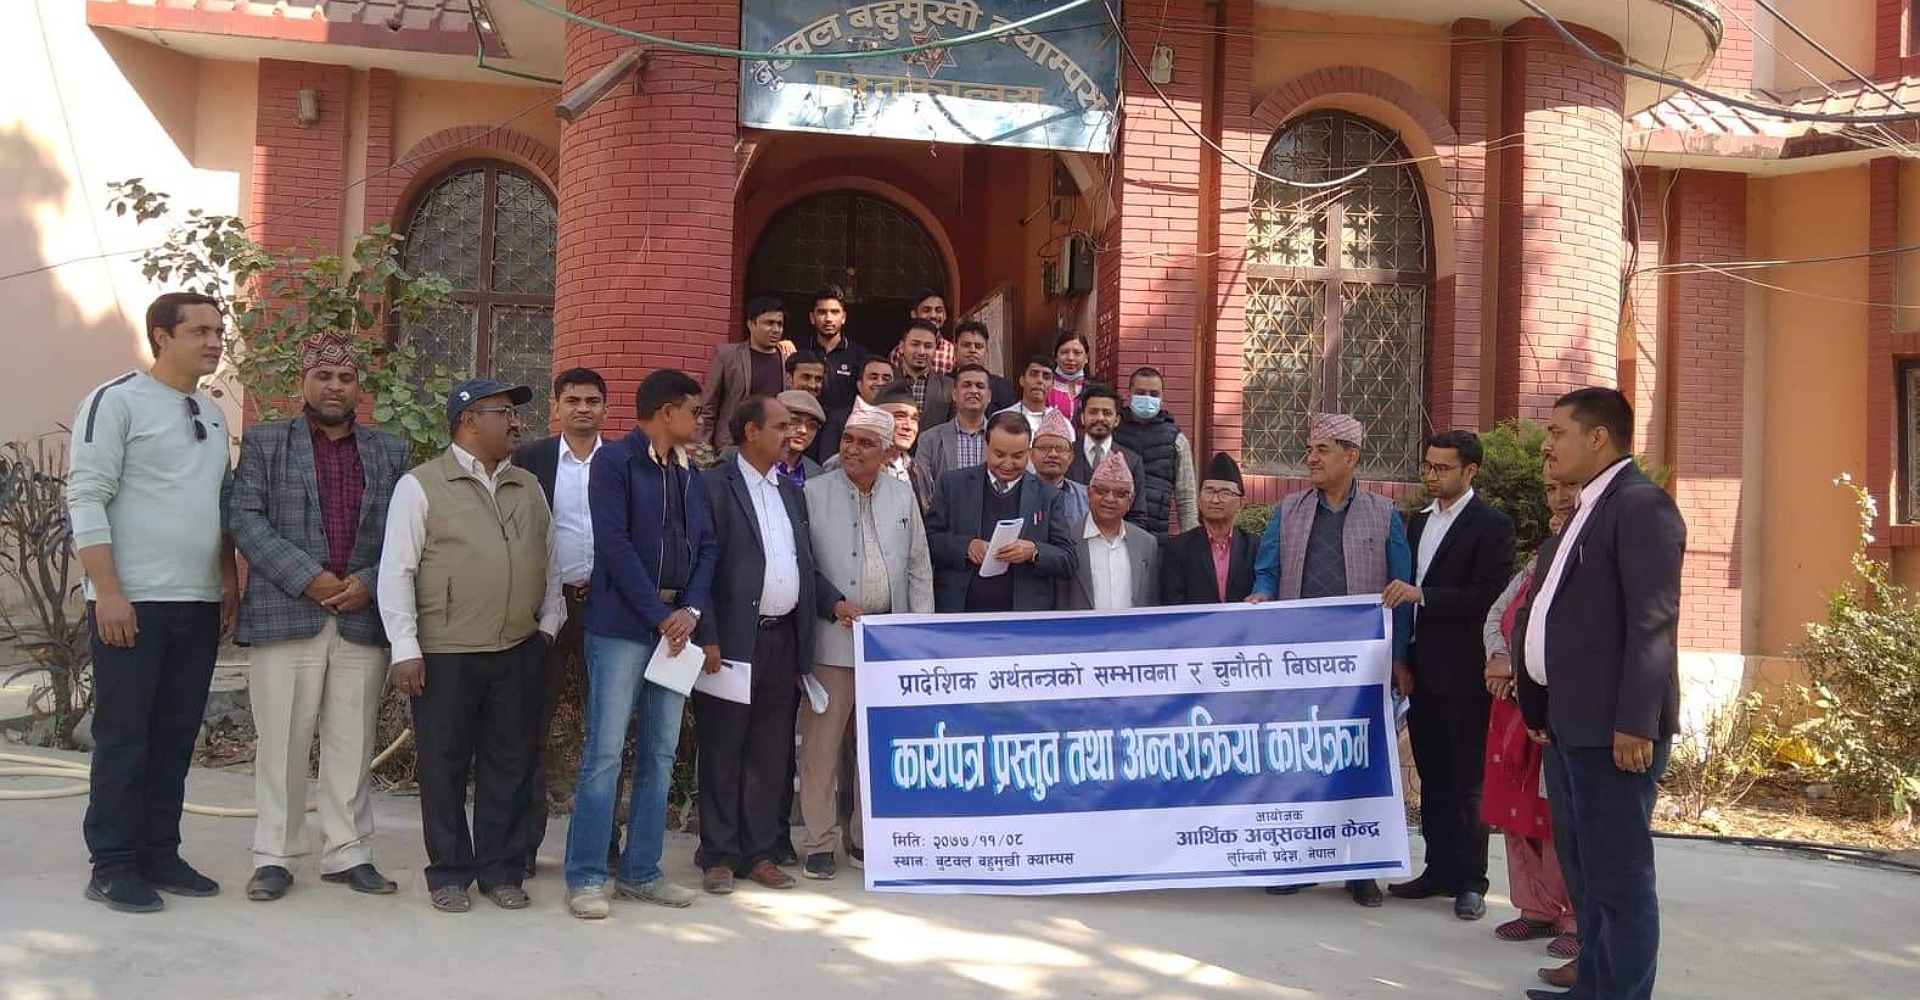 लुम्बिनी प्रदेशको अर्थतन्त्रको सम्भावना र चुनौती विषयक कार्यपत्र प्रस्तुत तथा अन्तरक्रिया